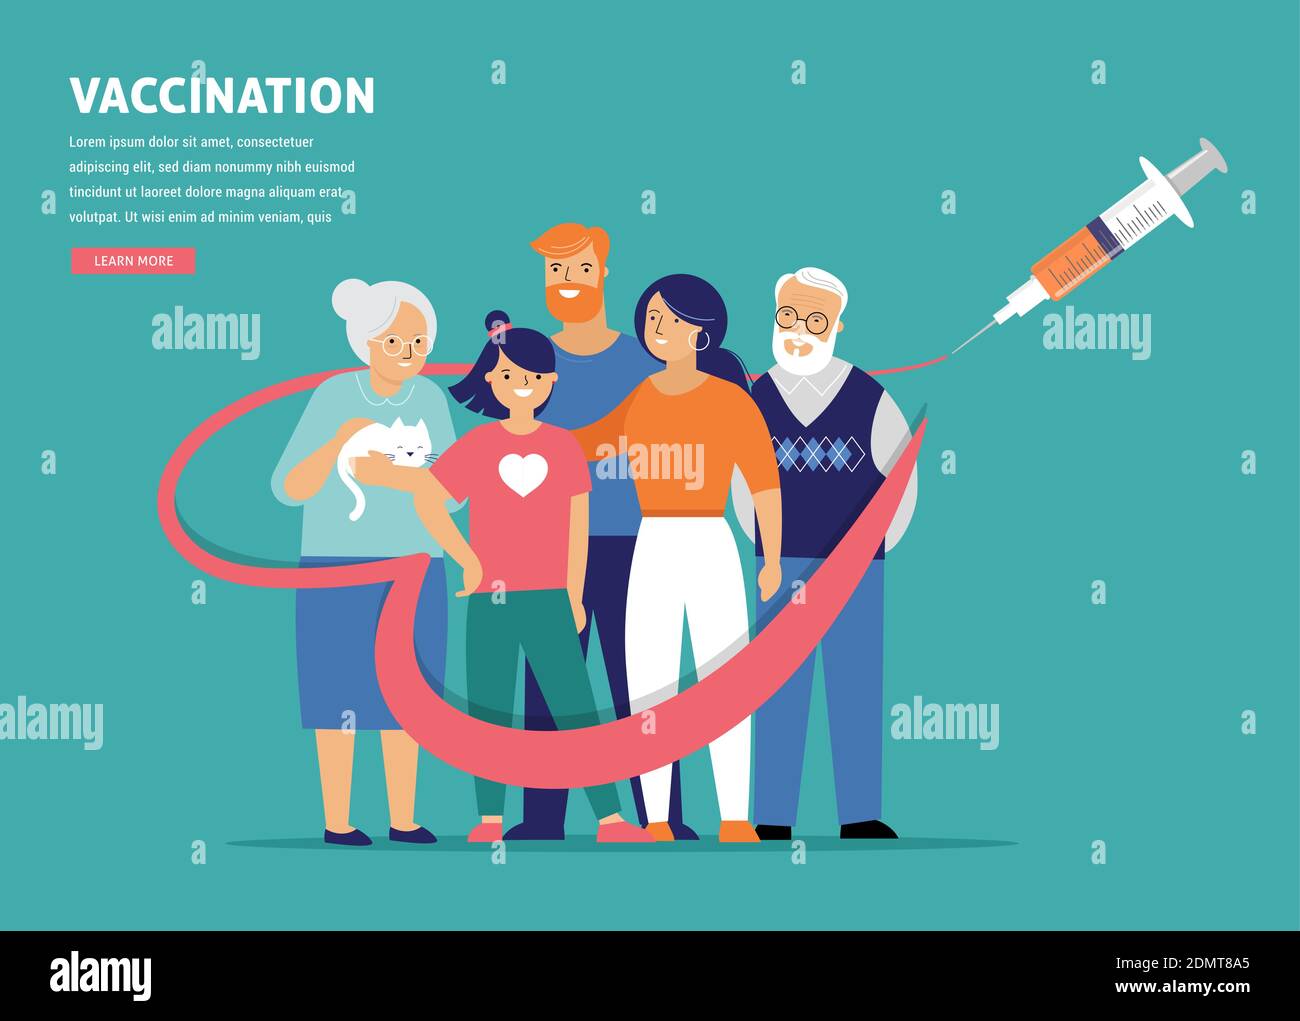 Konzept für die Familienimpfung. Zeit zum Impfen Banner - Spritze mit Impfstoff gegen COVID-19, Grippe oder Grippe und eine Familie Stock Vektor